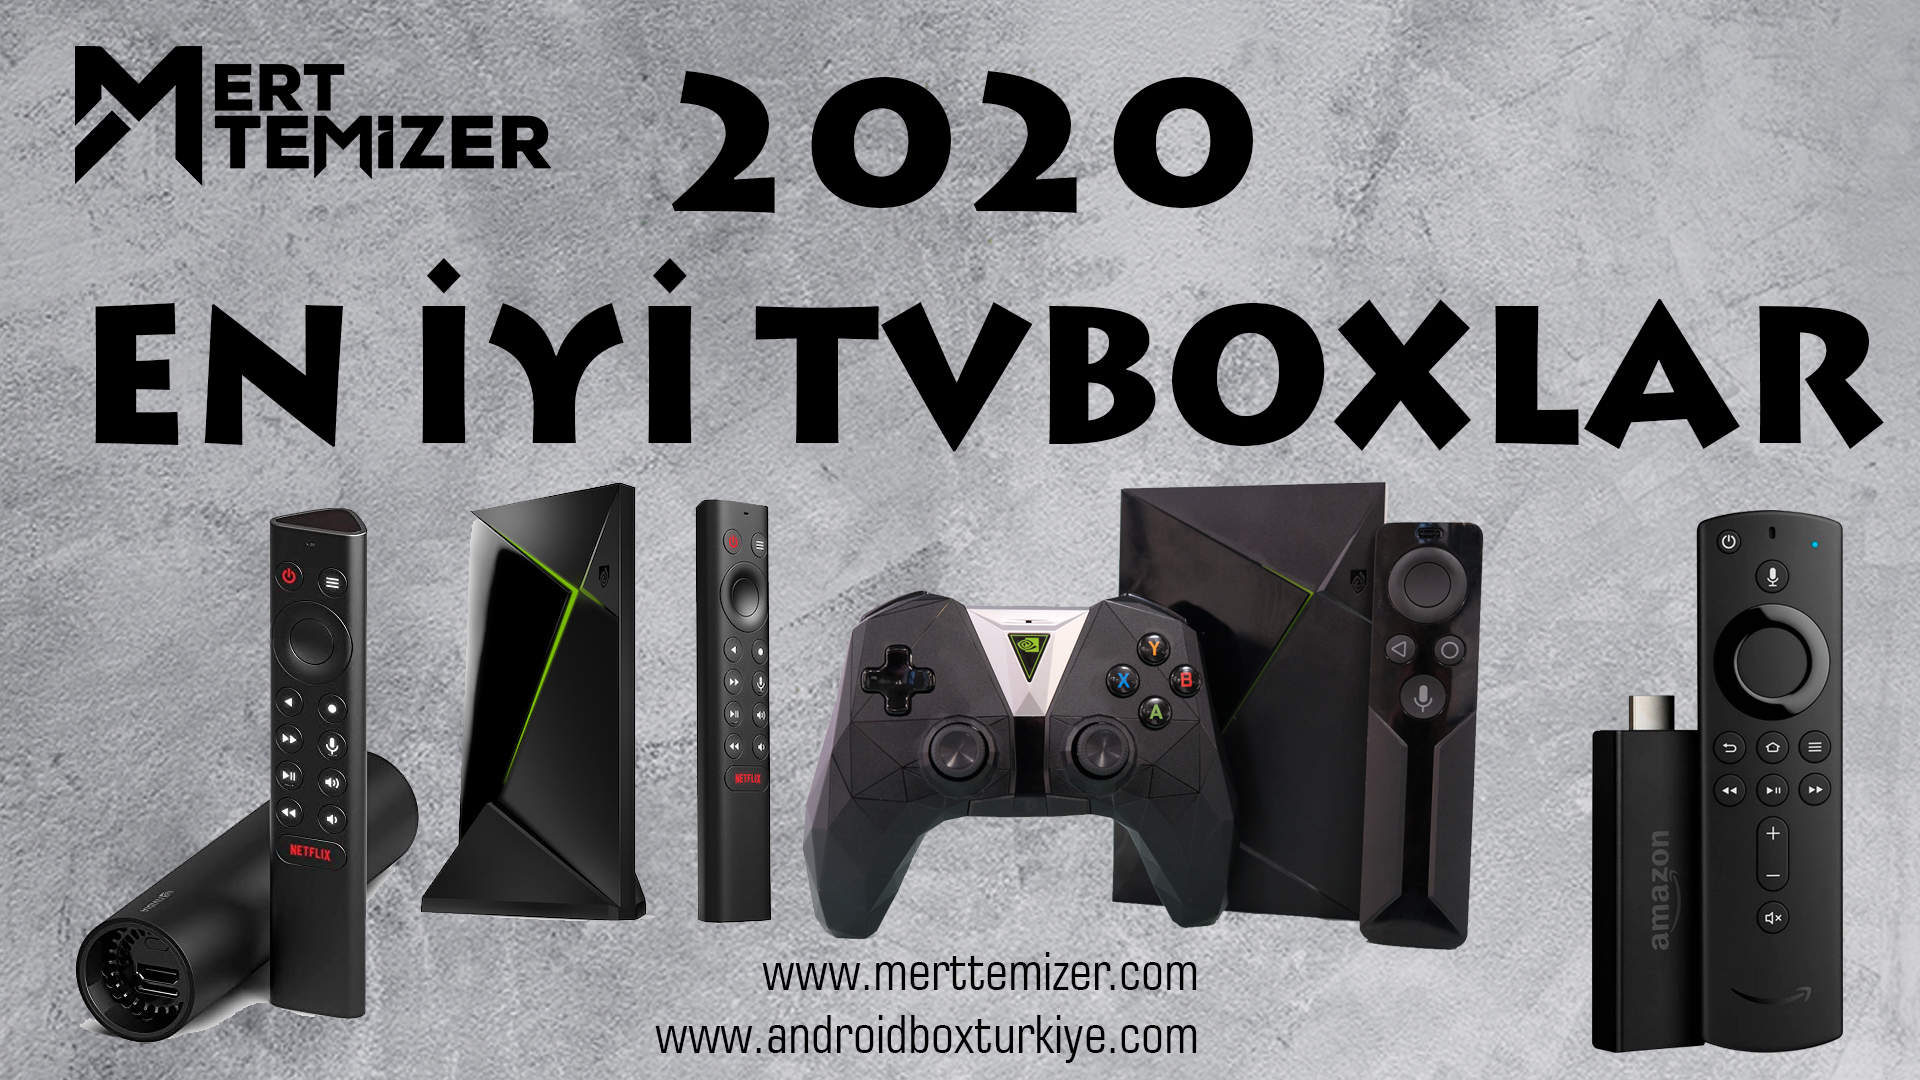 2020 En İyi Tv Boxlar – Android Boxlar – Linux Cihazlar